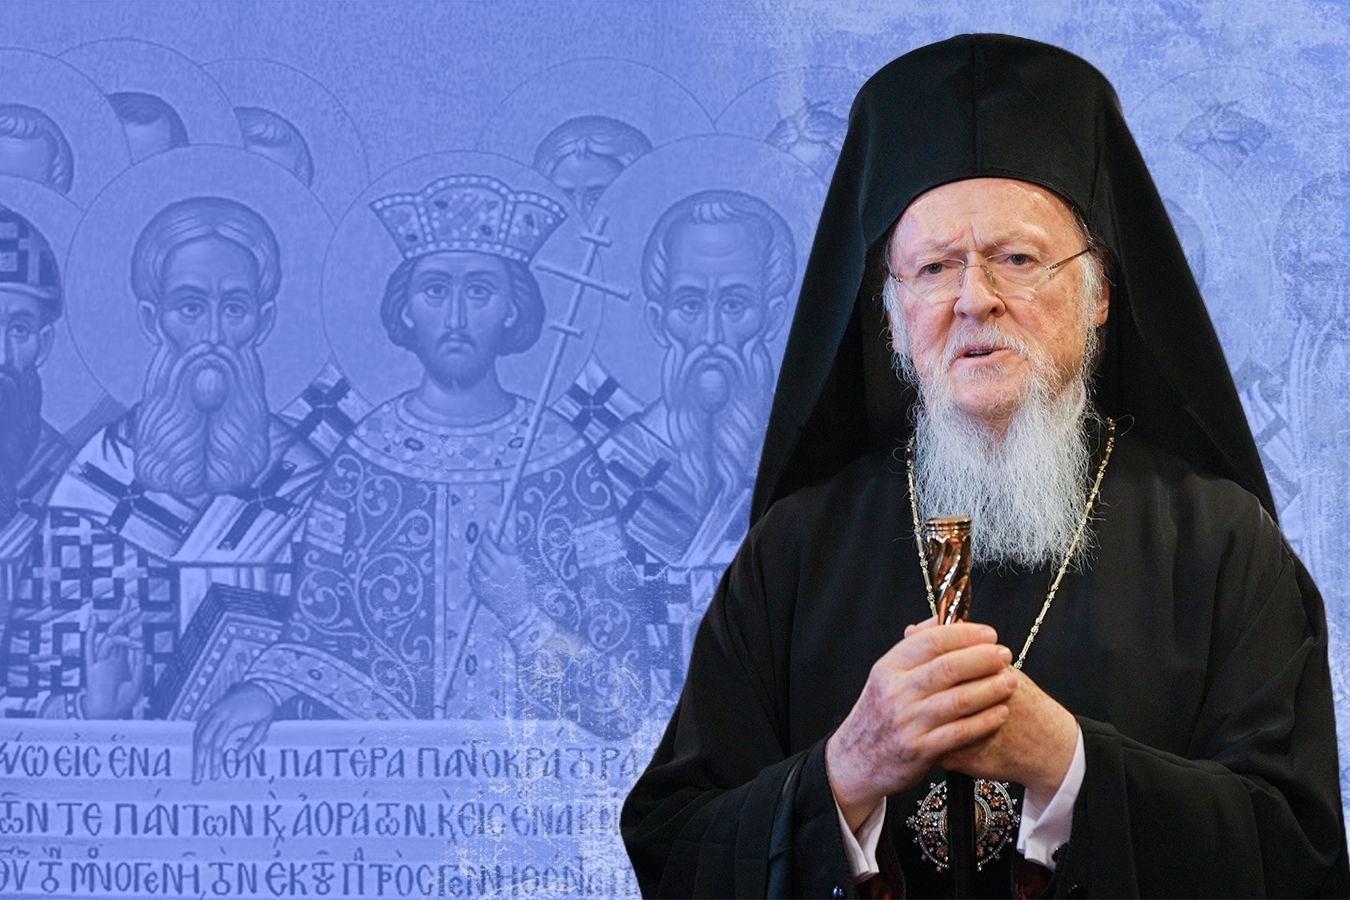 Варфоломей ответил Московскому патриархату на претензии: "Преследуют иностранные интересы"